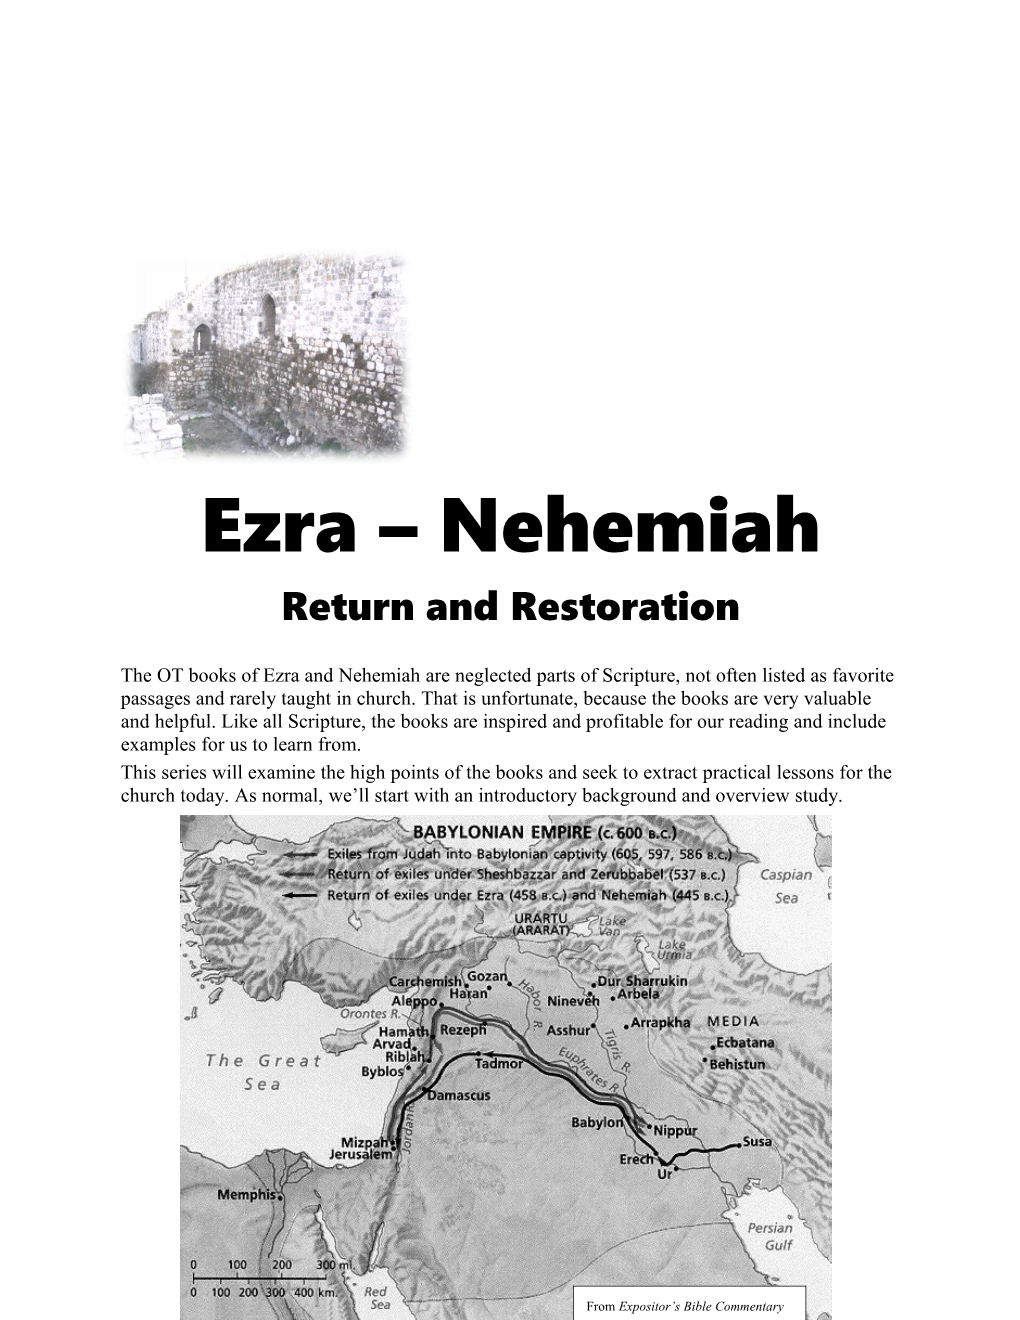 Ezra-Nehemiahlesson 1: Introductionpage 1